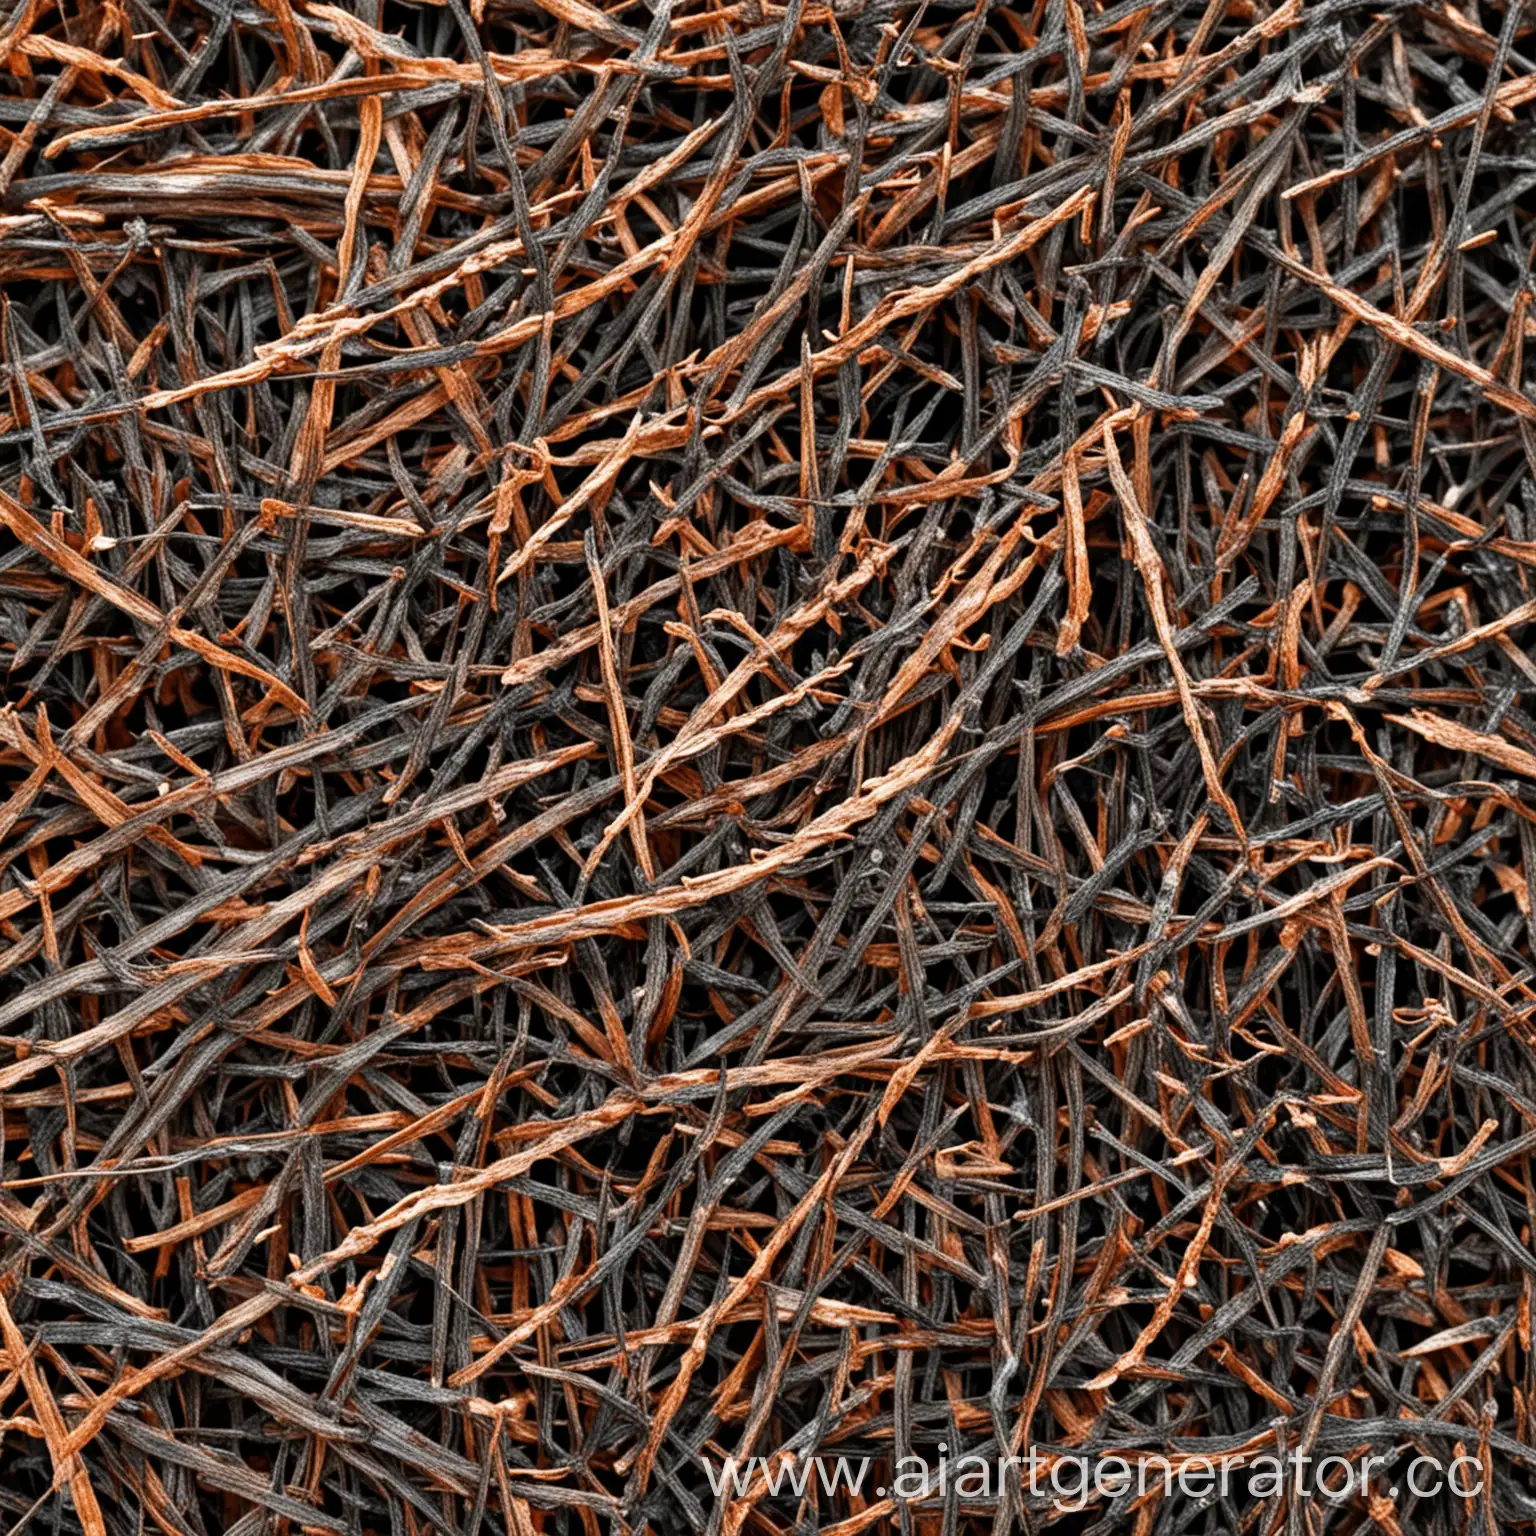 Microscopic-View-of-Burnt-Pine-Needles